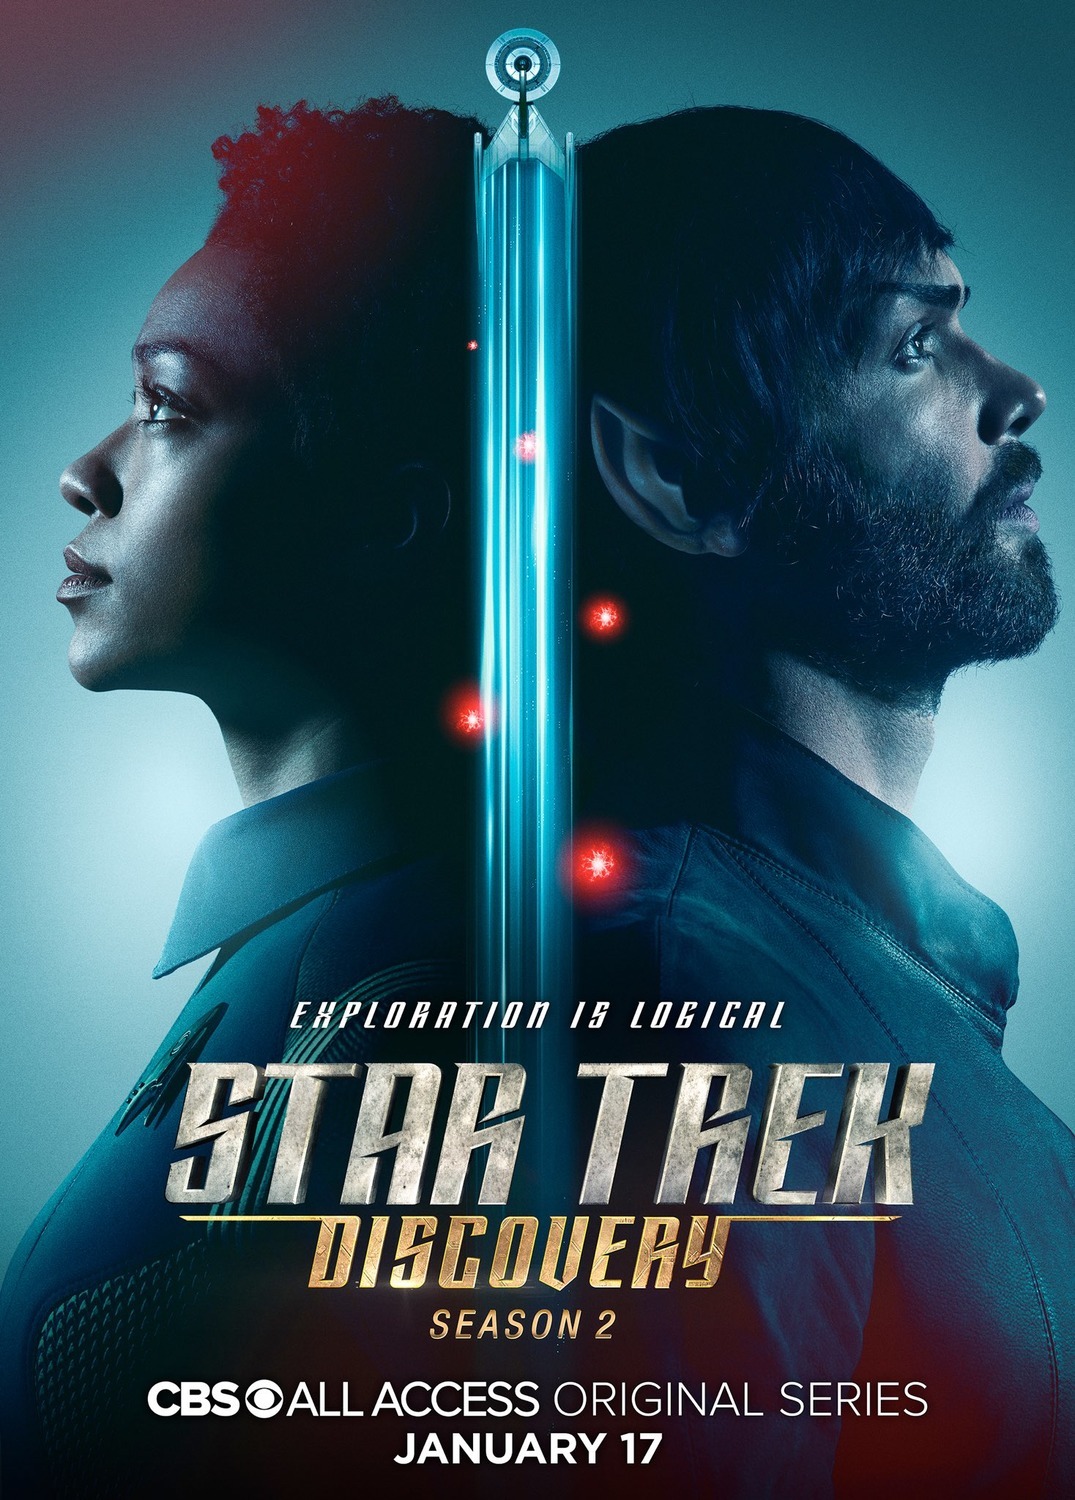 ดูหนังออนไลน์ฟรี Star Trek Discovery Season 2 EP.3 สตาร์ เทรค ดิสคัฟเวอรี่ ซีซั่นที่ 2 ตอนที่ 3